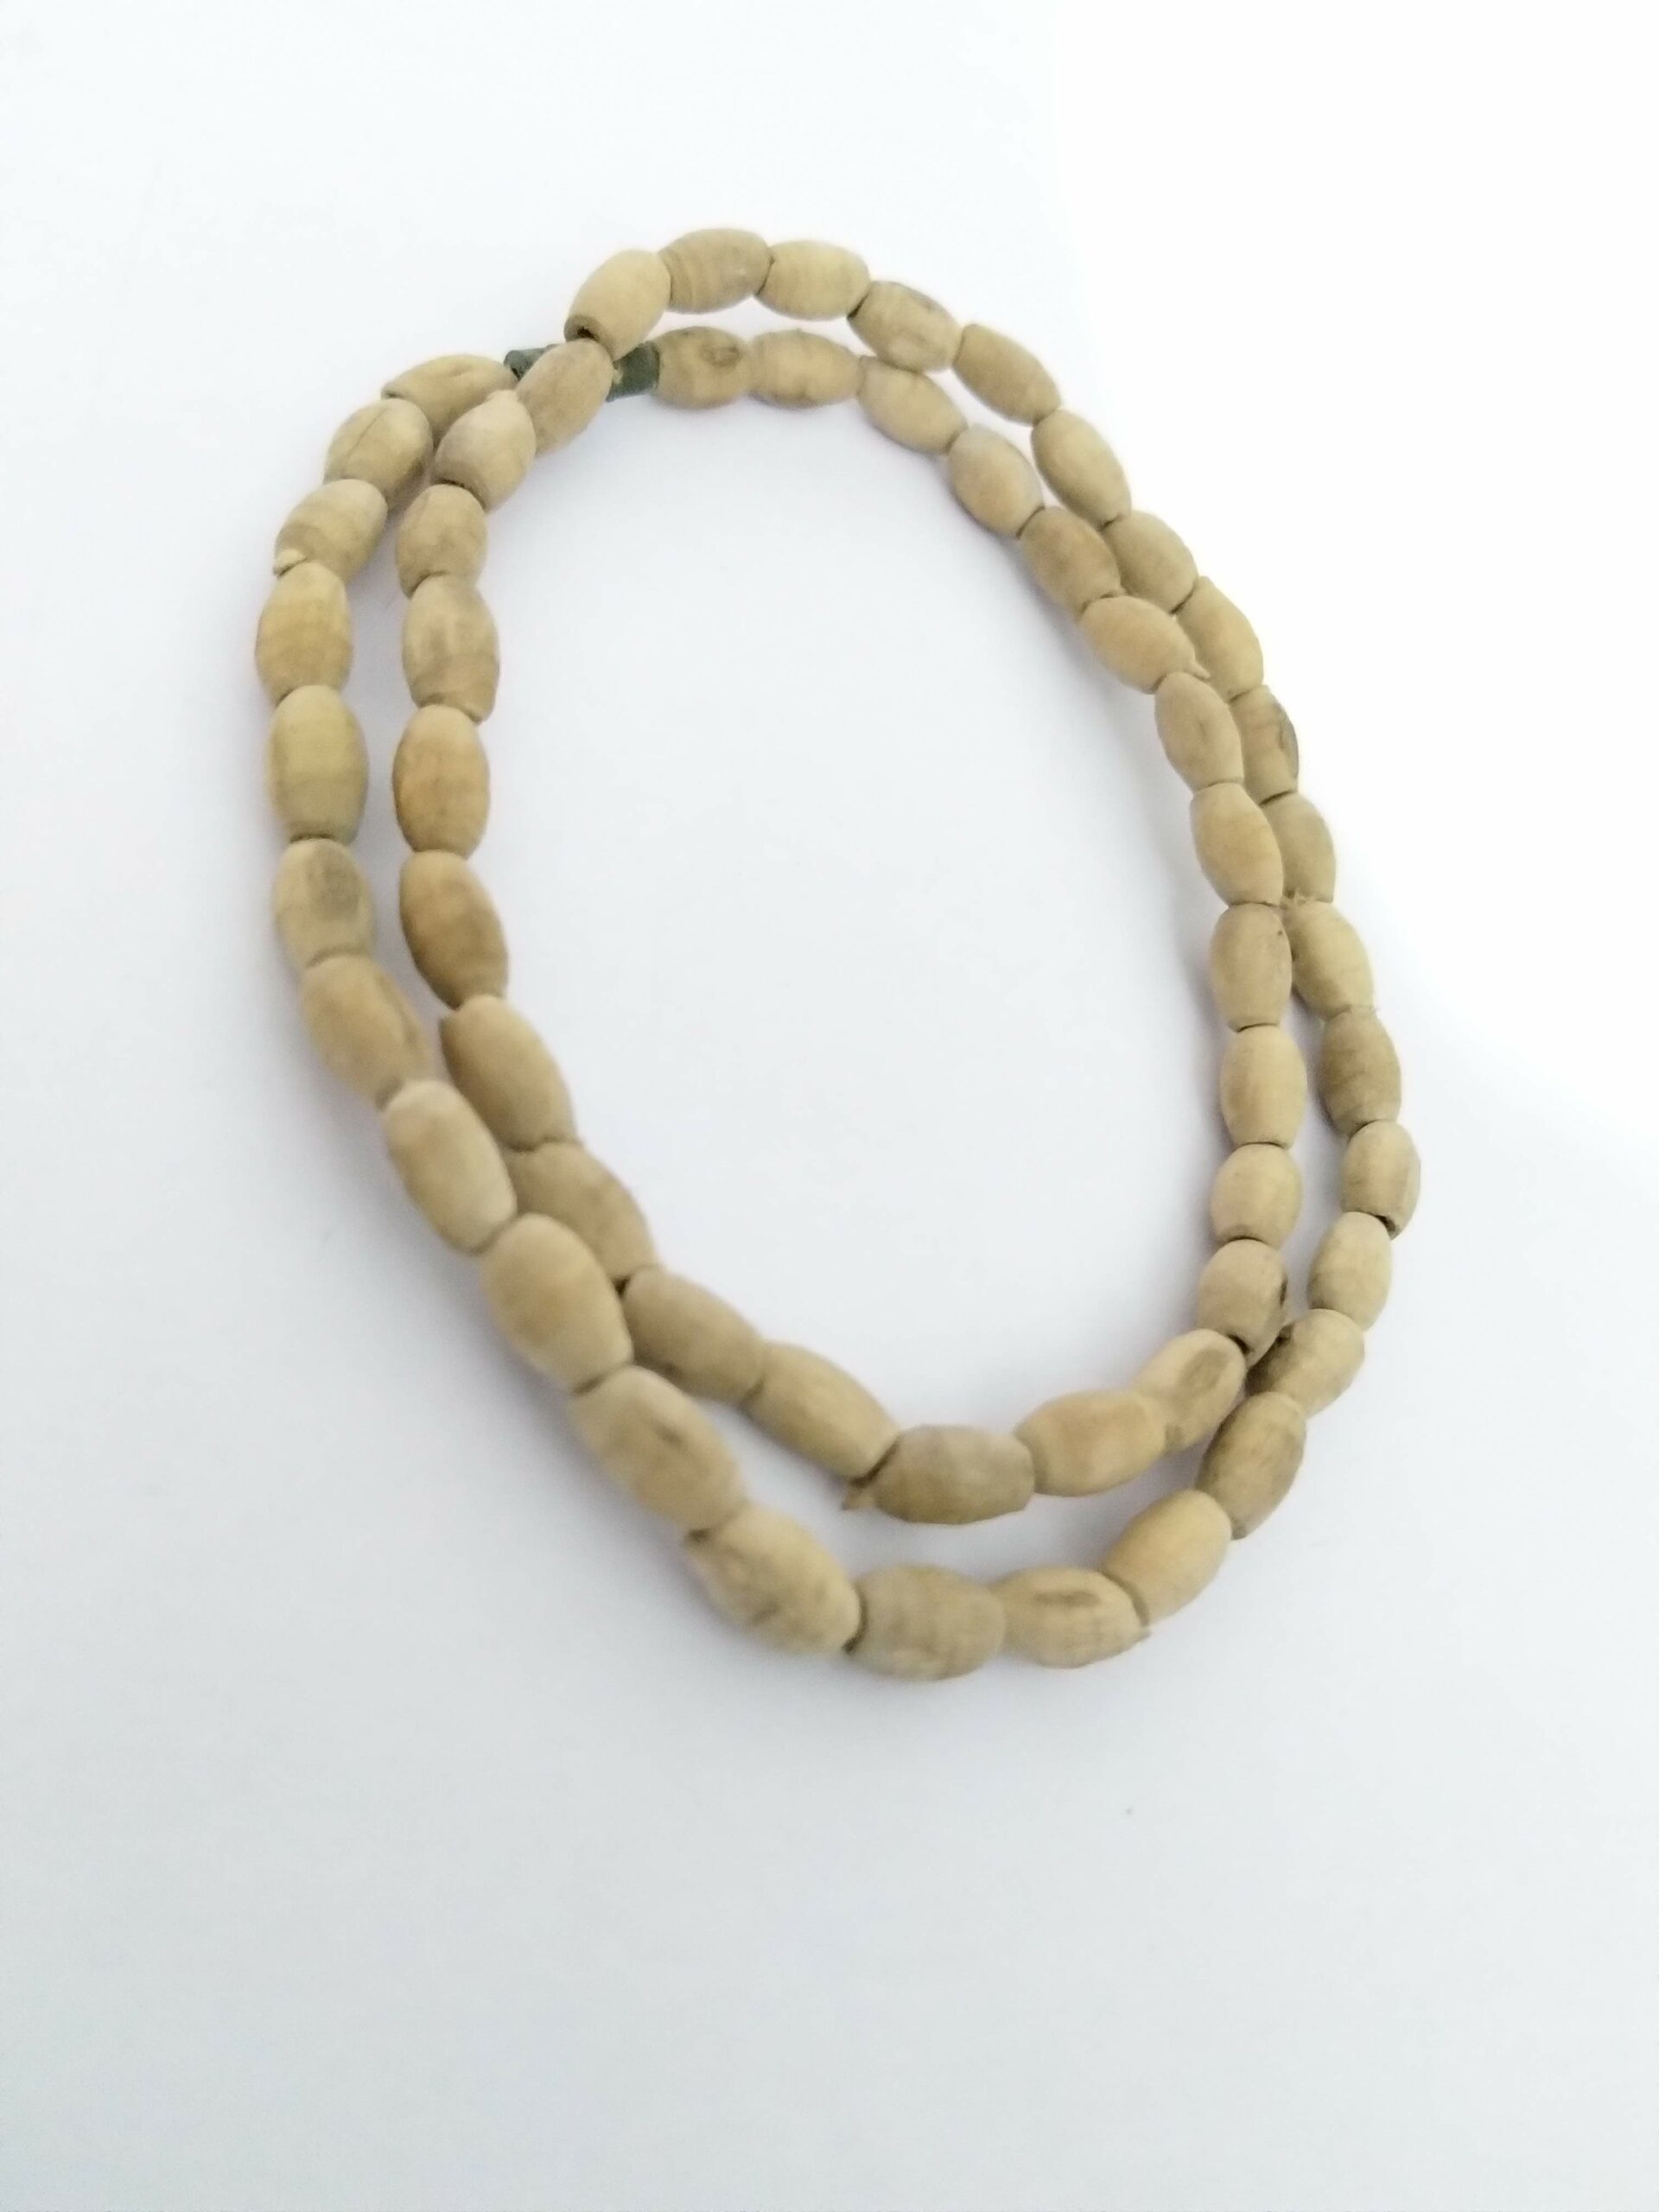 Tulsi Beads Bracelet / Tulsi Bracelet | eBay